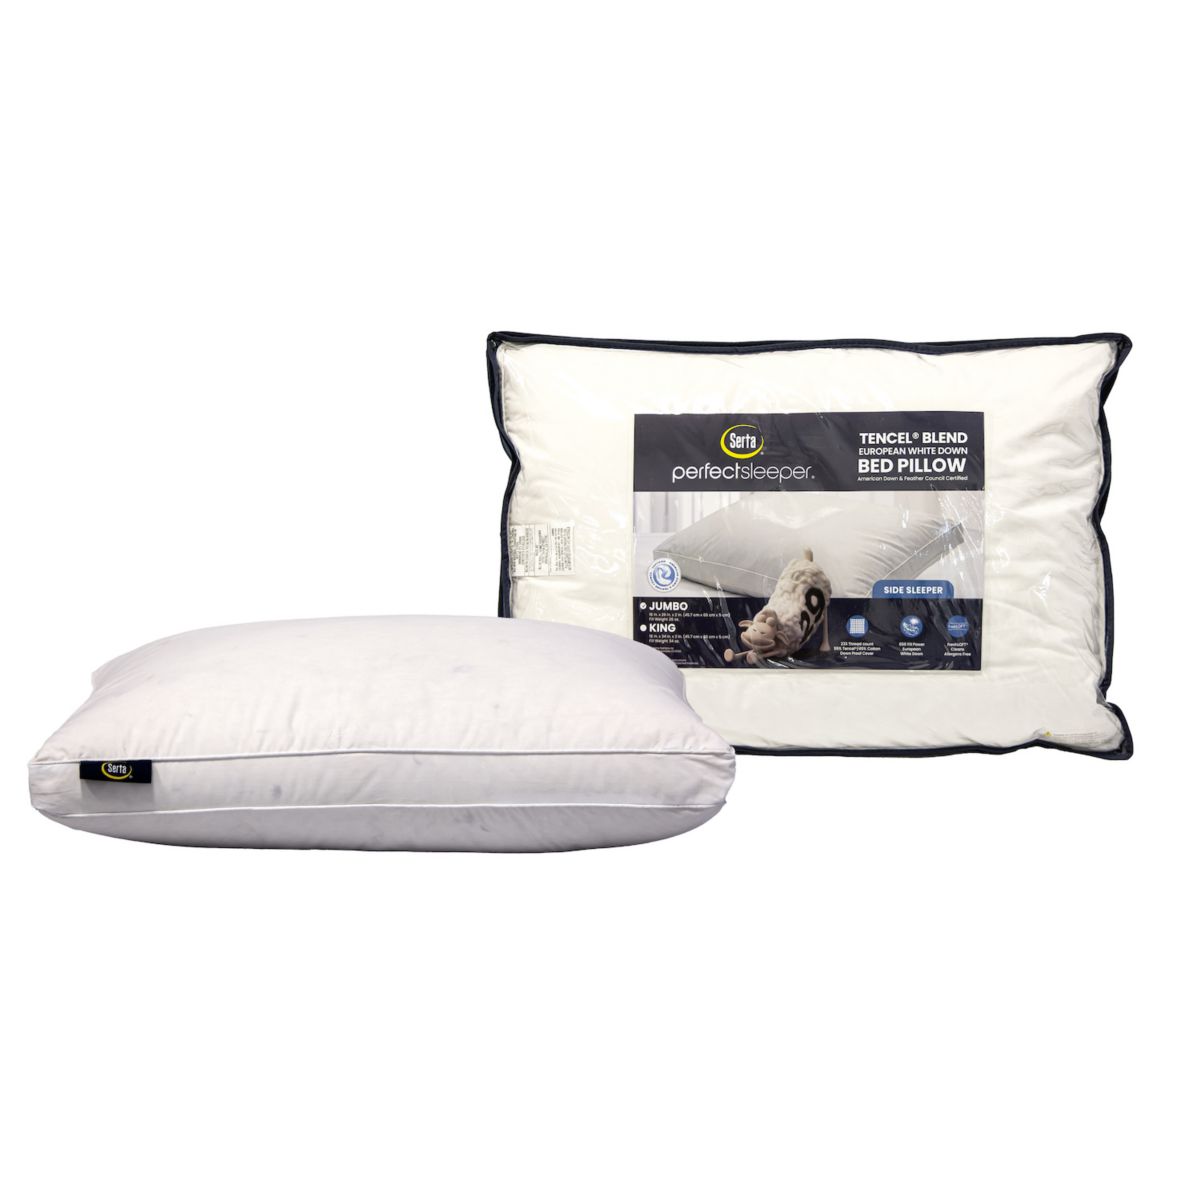 Европейская твердая подушка для сна из натуральной ткани Serta из тенсела и хлопка Serta